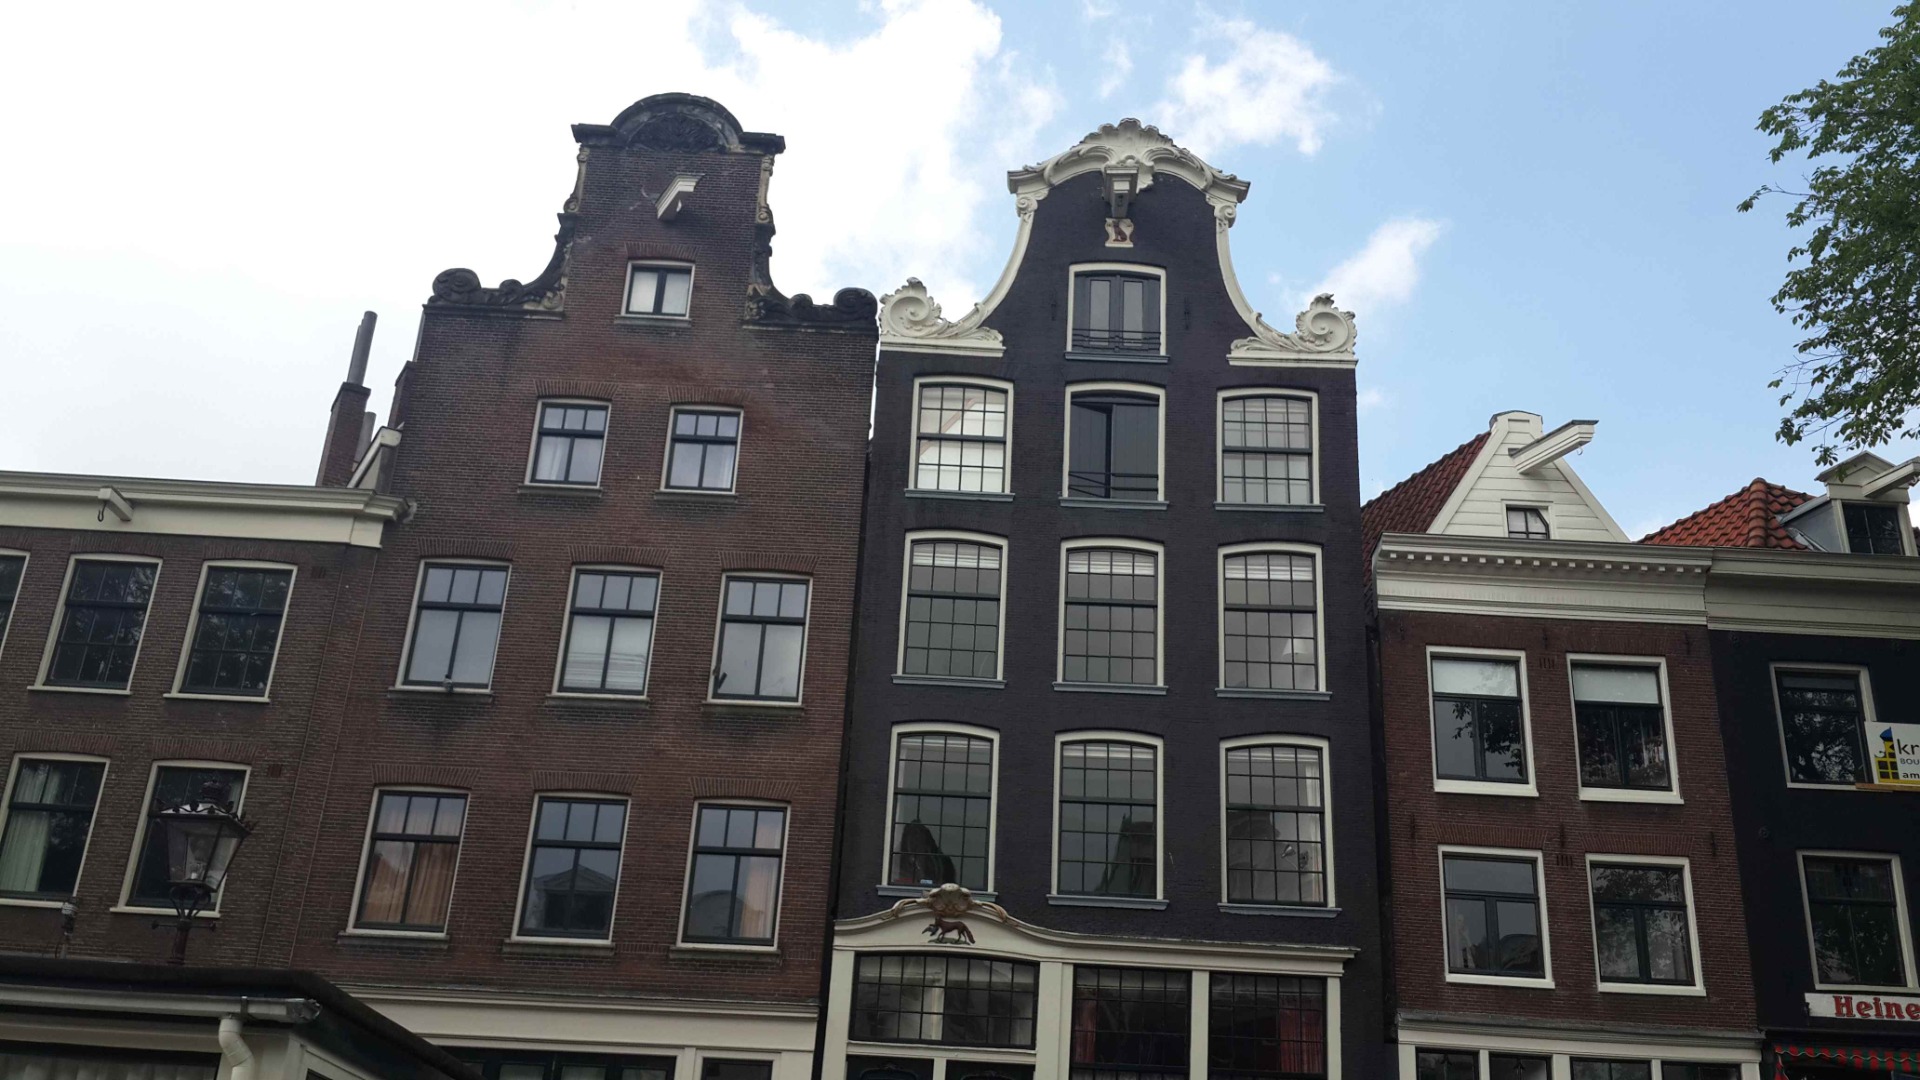 Amsterdam’da evlerin neden yamuk olduğu ve tepelerinde kanca olduğu belli oldu 13